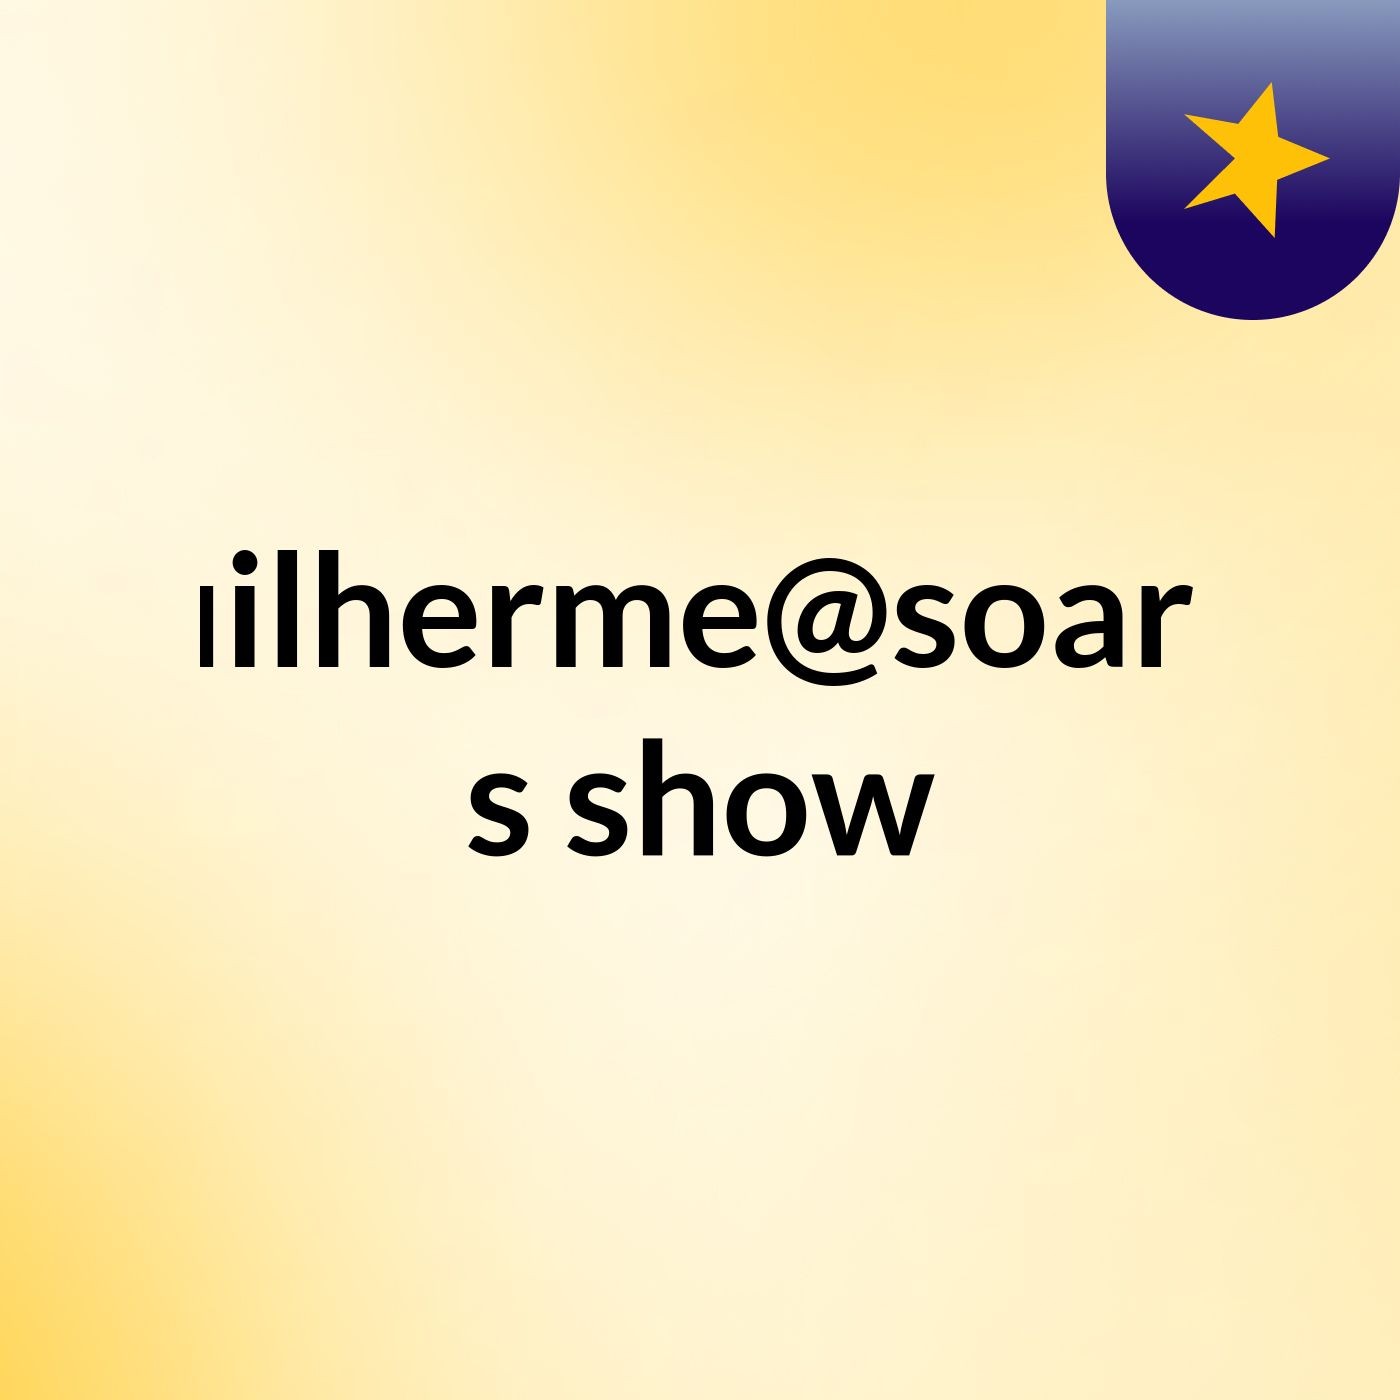 guilherme@soares's show